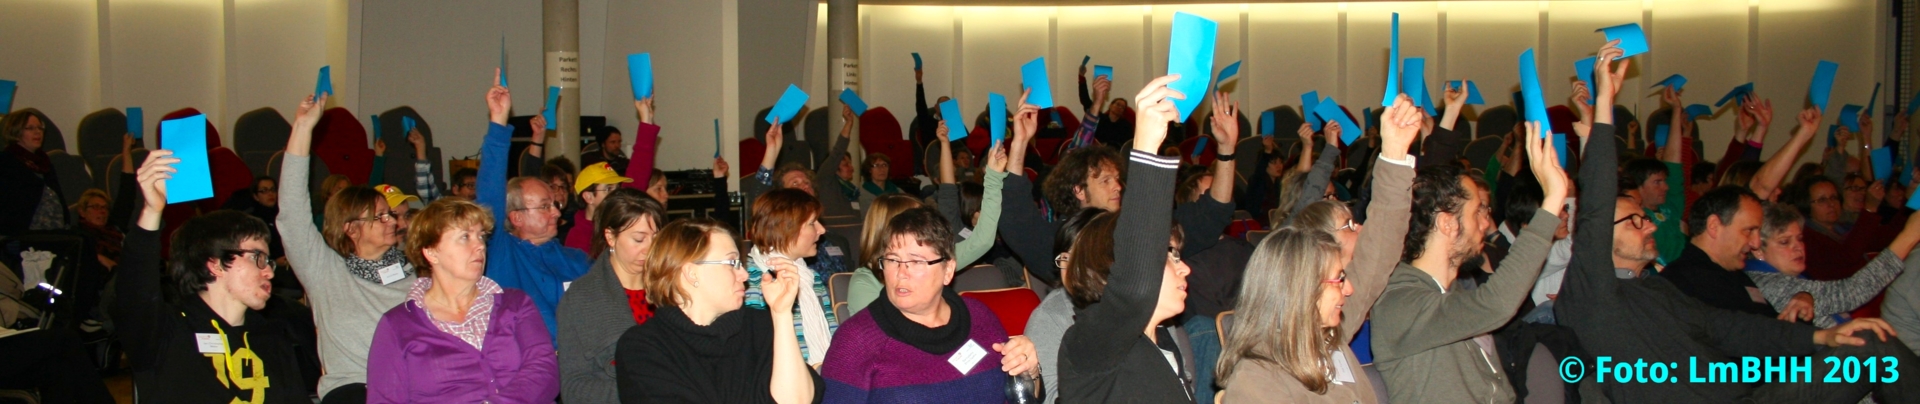 Foto aufgenommen während der Hamburger Fachtagung 2013, Blick in den Saal mit vielen Teilnehmenden bei der Abstimmung zur Netzwerk-Gründung